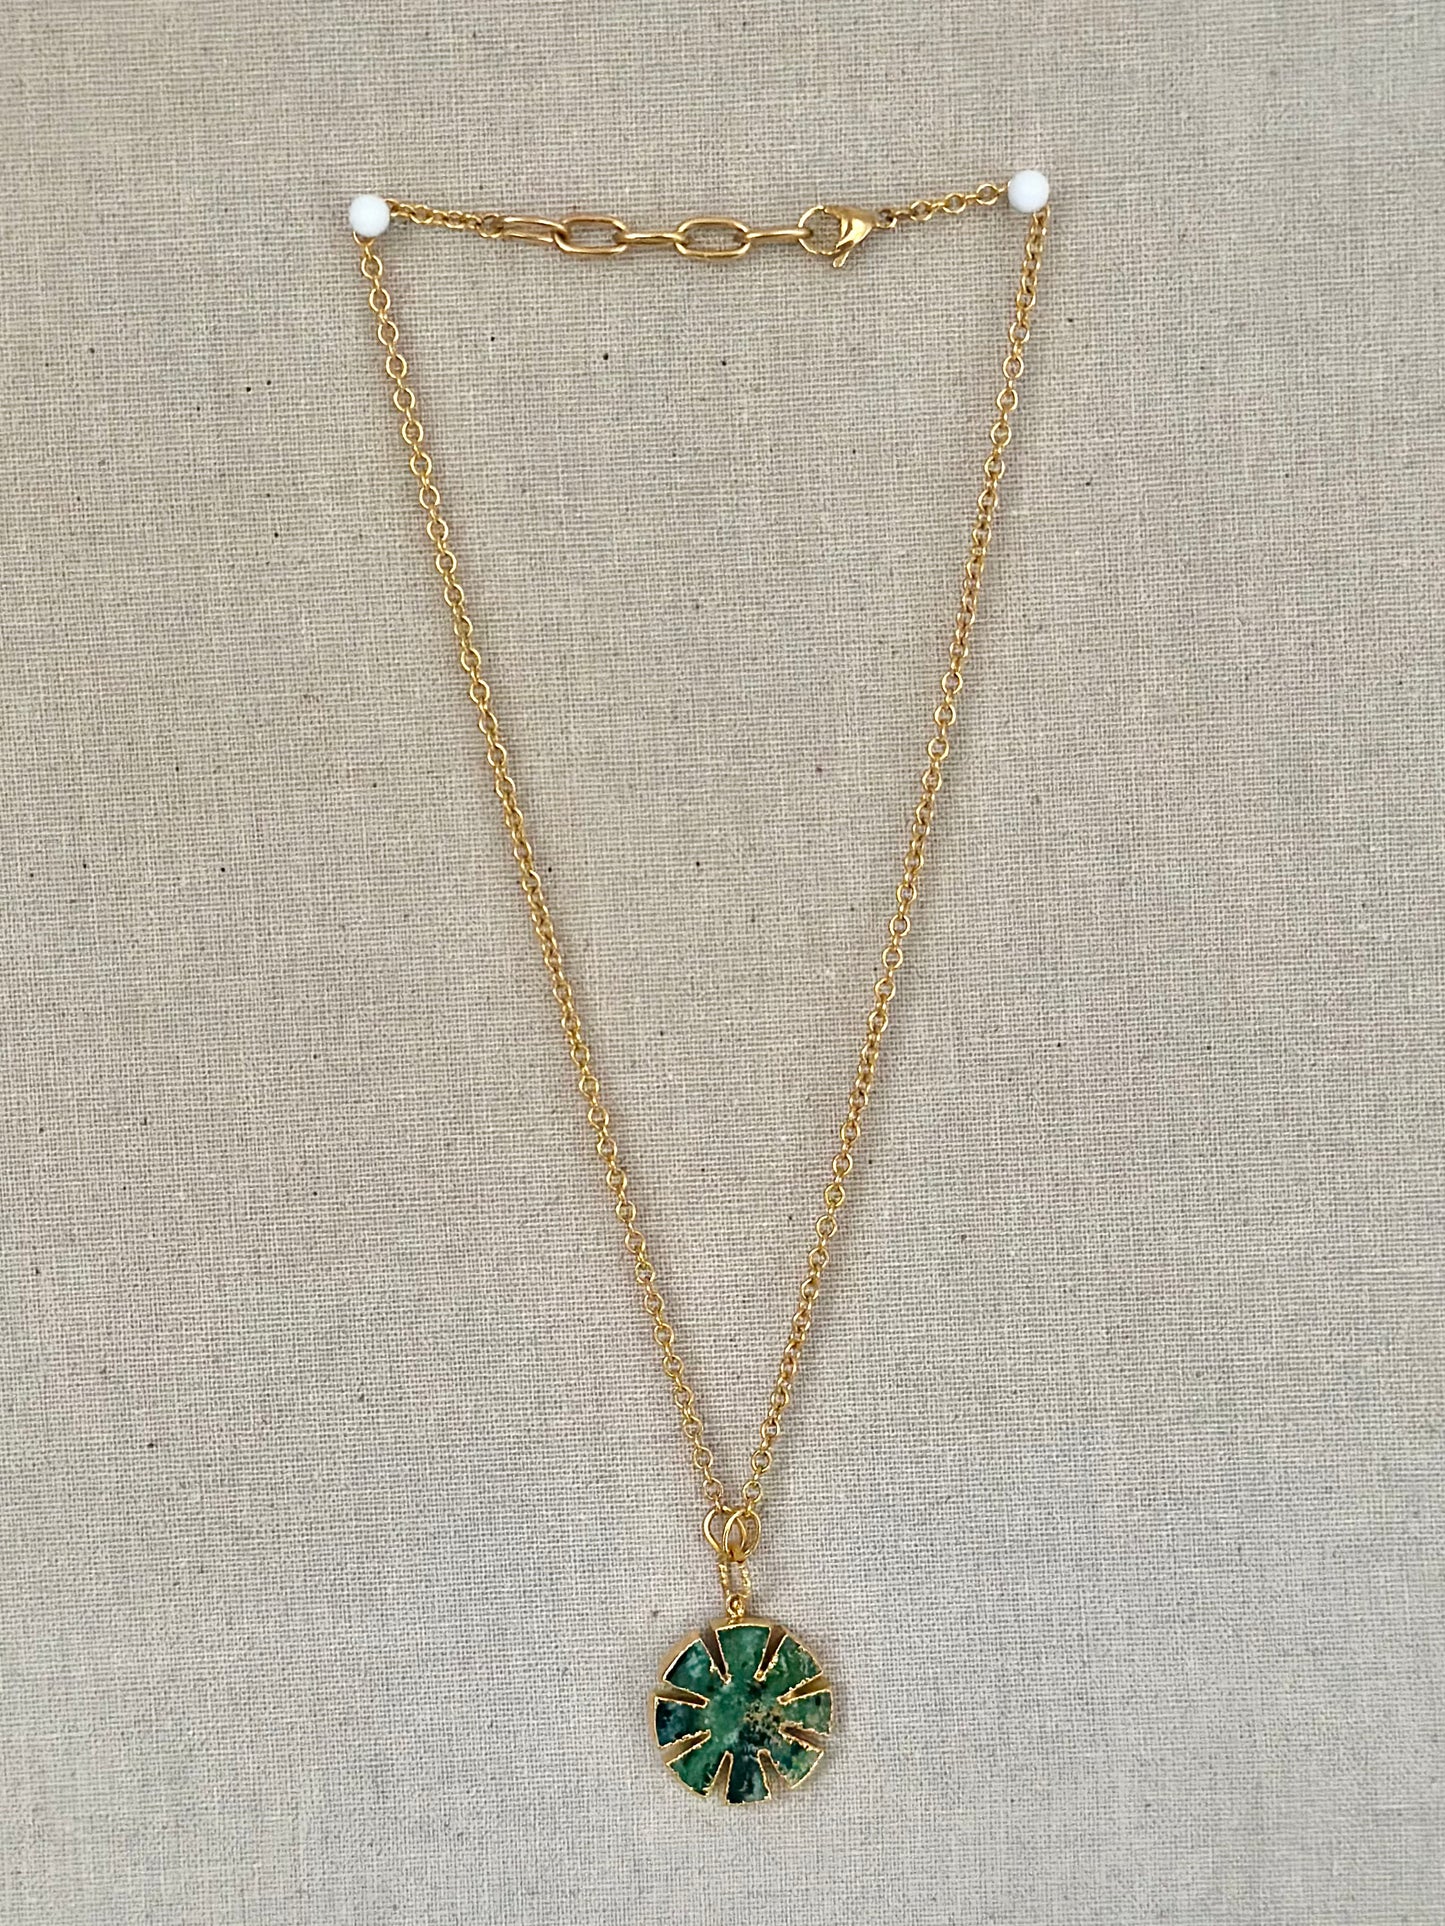 Kiwi necklace